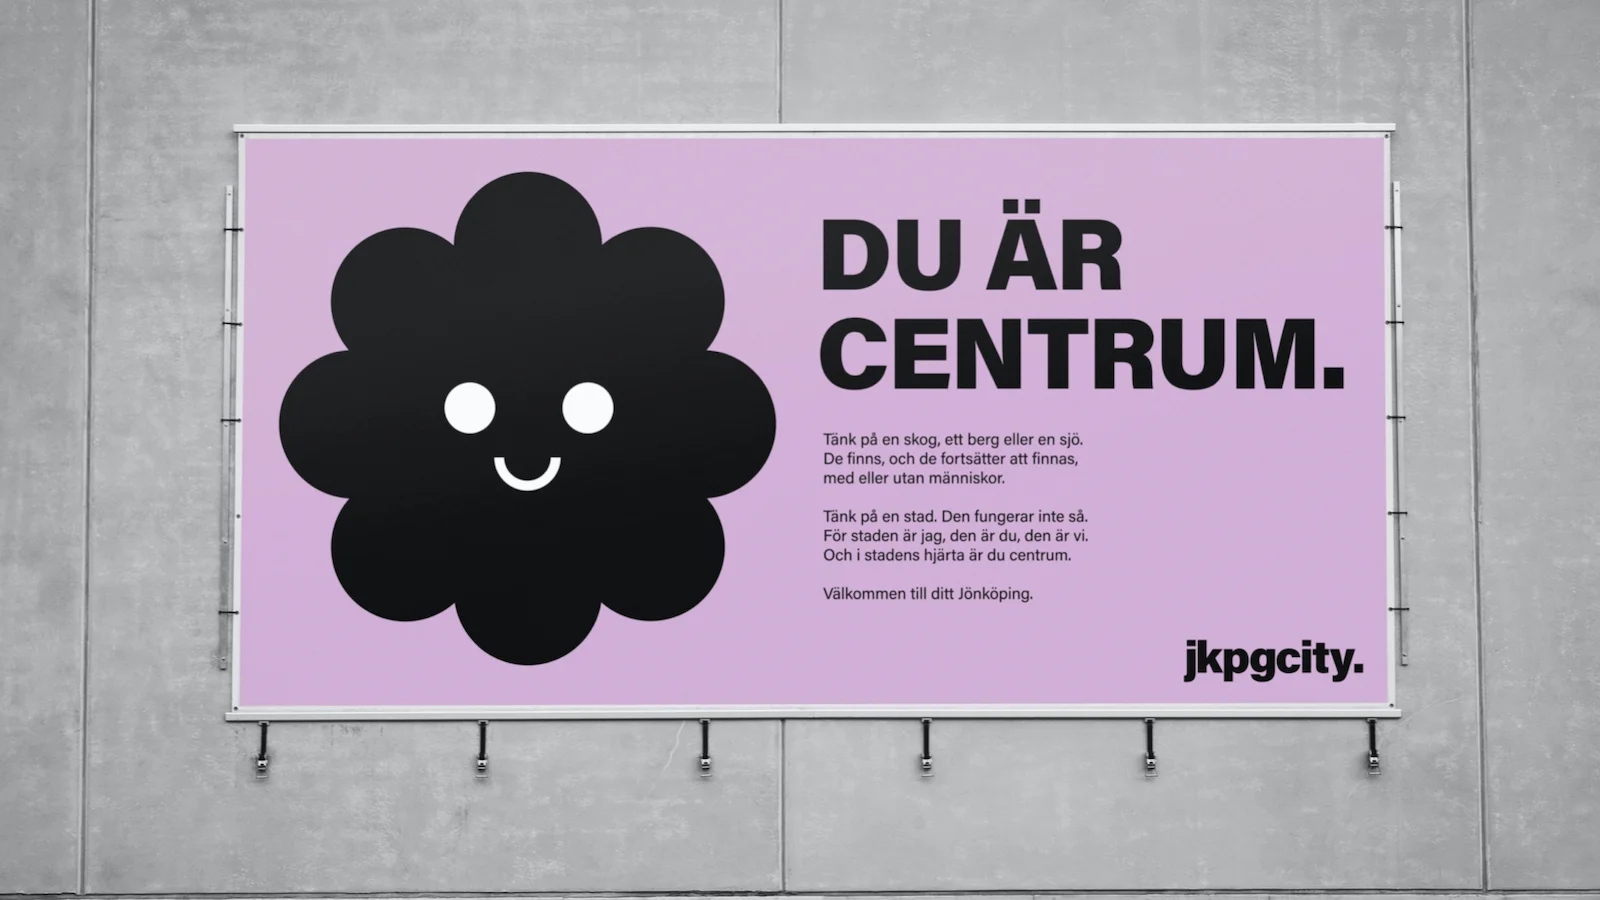 reklamskylt med logotyp, rubrik "Du är i centrum" och text.